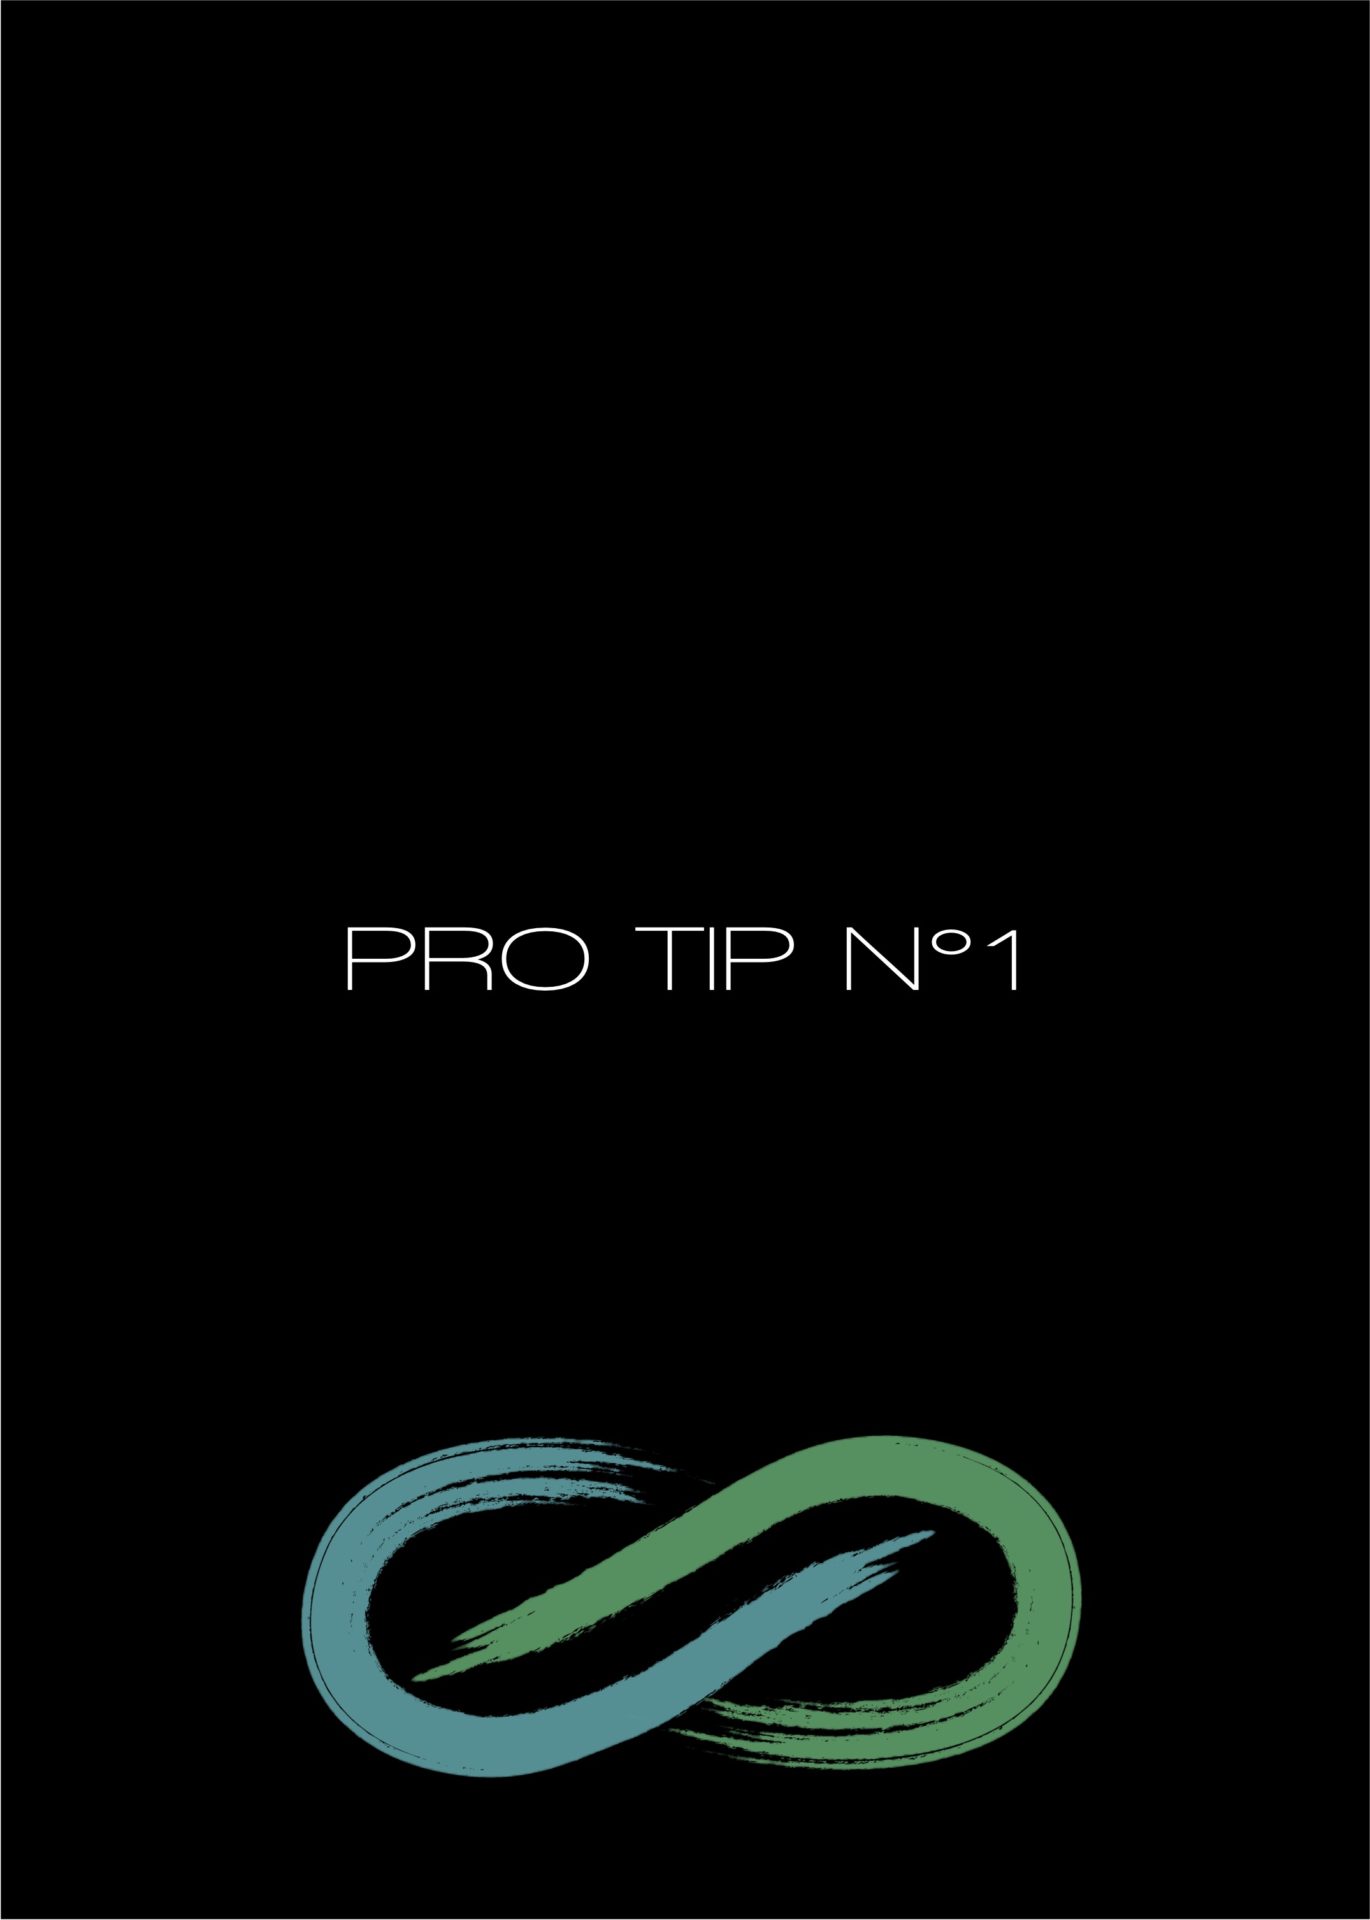 PRO TIP N°1 inscrit en blanc sur fond noir. Logo vert et bleu en forme d'infini